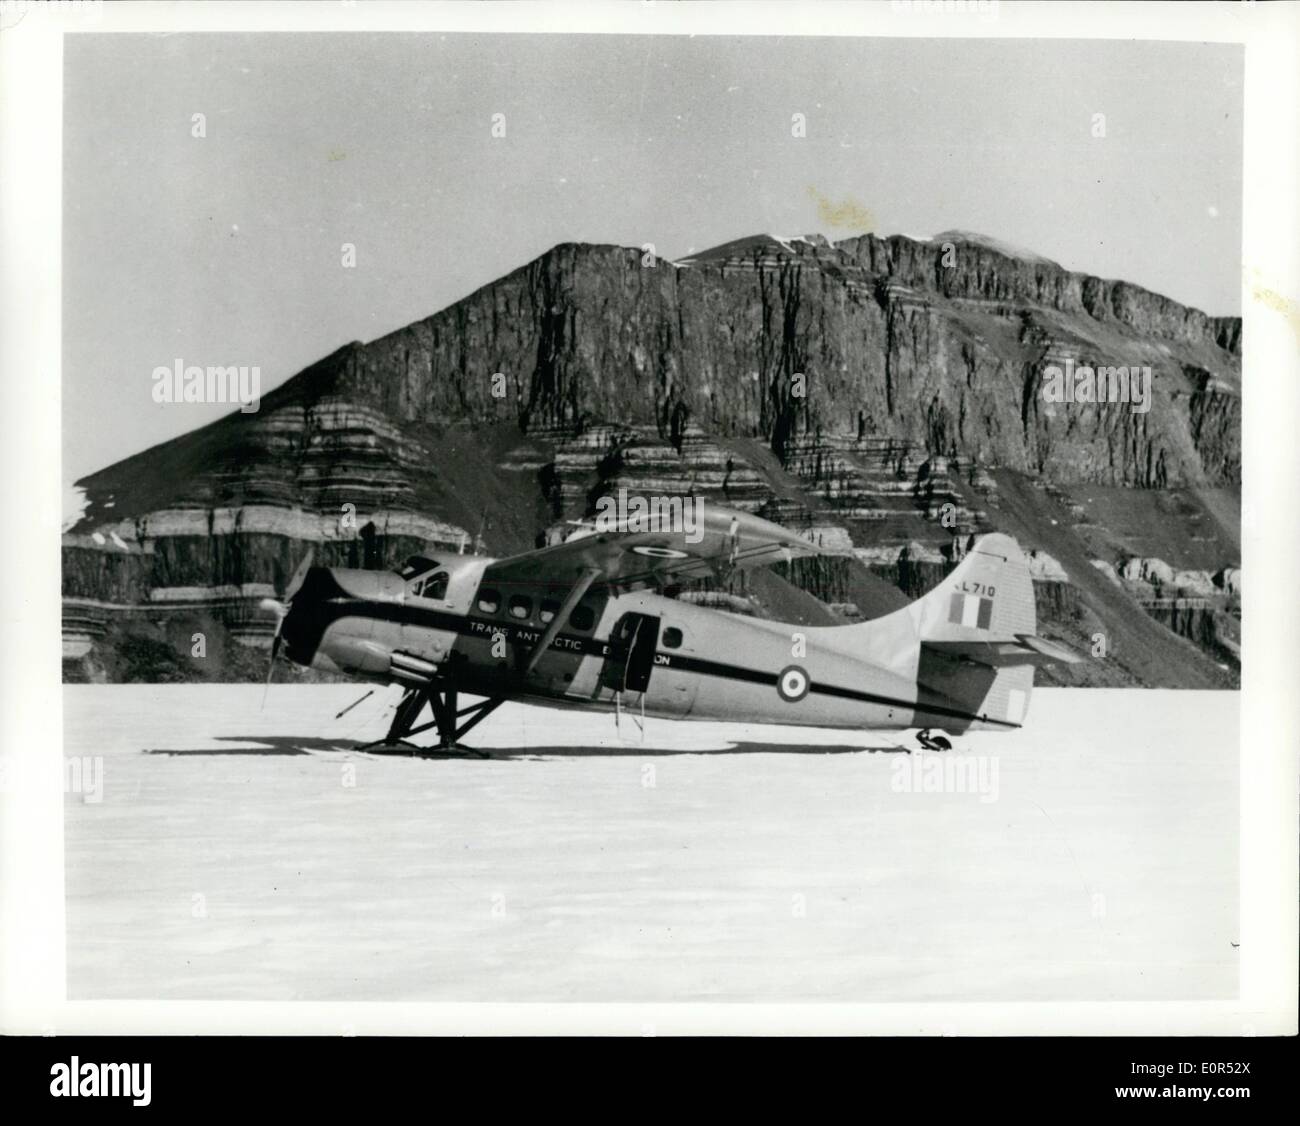 10 févr. 02, 1958 - Aéronef monomoteur traverse Continent Antarctique : Un de Havilland Otter de l'Expédition transantarctique du Commonwealth britannique est devenu le premier avion monomoteur à traverser le continent de glace. Il a volé le mois dernier à partir de la base de l'expédition au sud de la glace sur la base de Scott de l'autre côté de l'Antarctique. Les États-Unis sont parmi les six pays qui sont construits à l'aide d'aéronefs de Havilland en Antarctique au cours de l'Année géophysique internationale. La photo montre le Commonwealth britannique de Havilland Otter avec les montagnes de l'Antarctique Thoren dans l'arrière-plan Banque D'Images